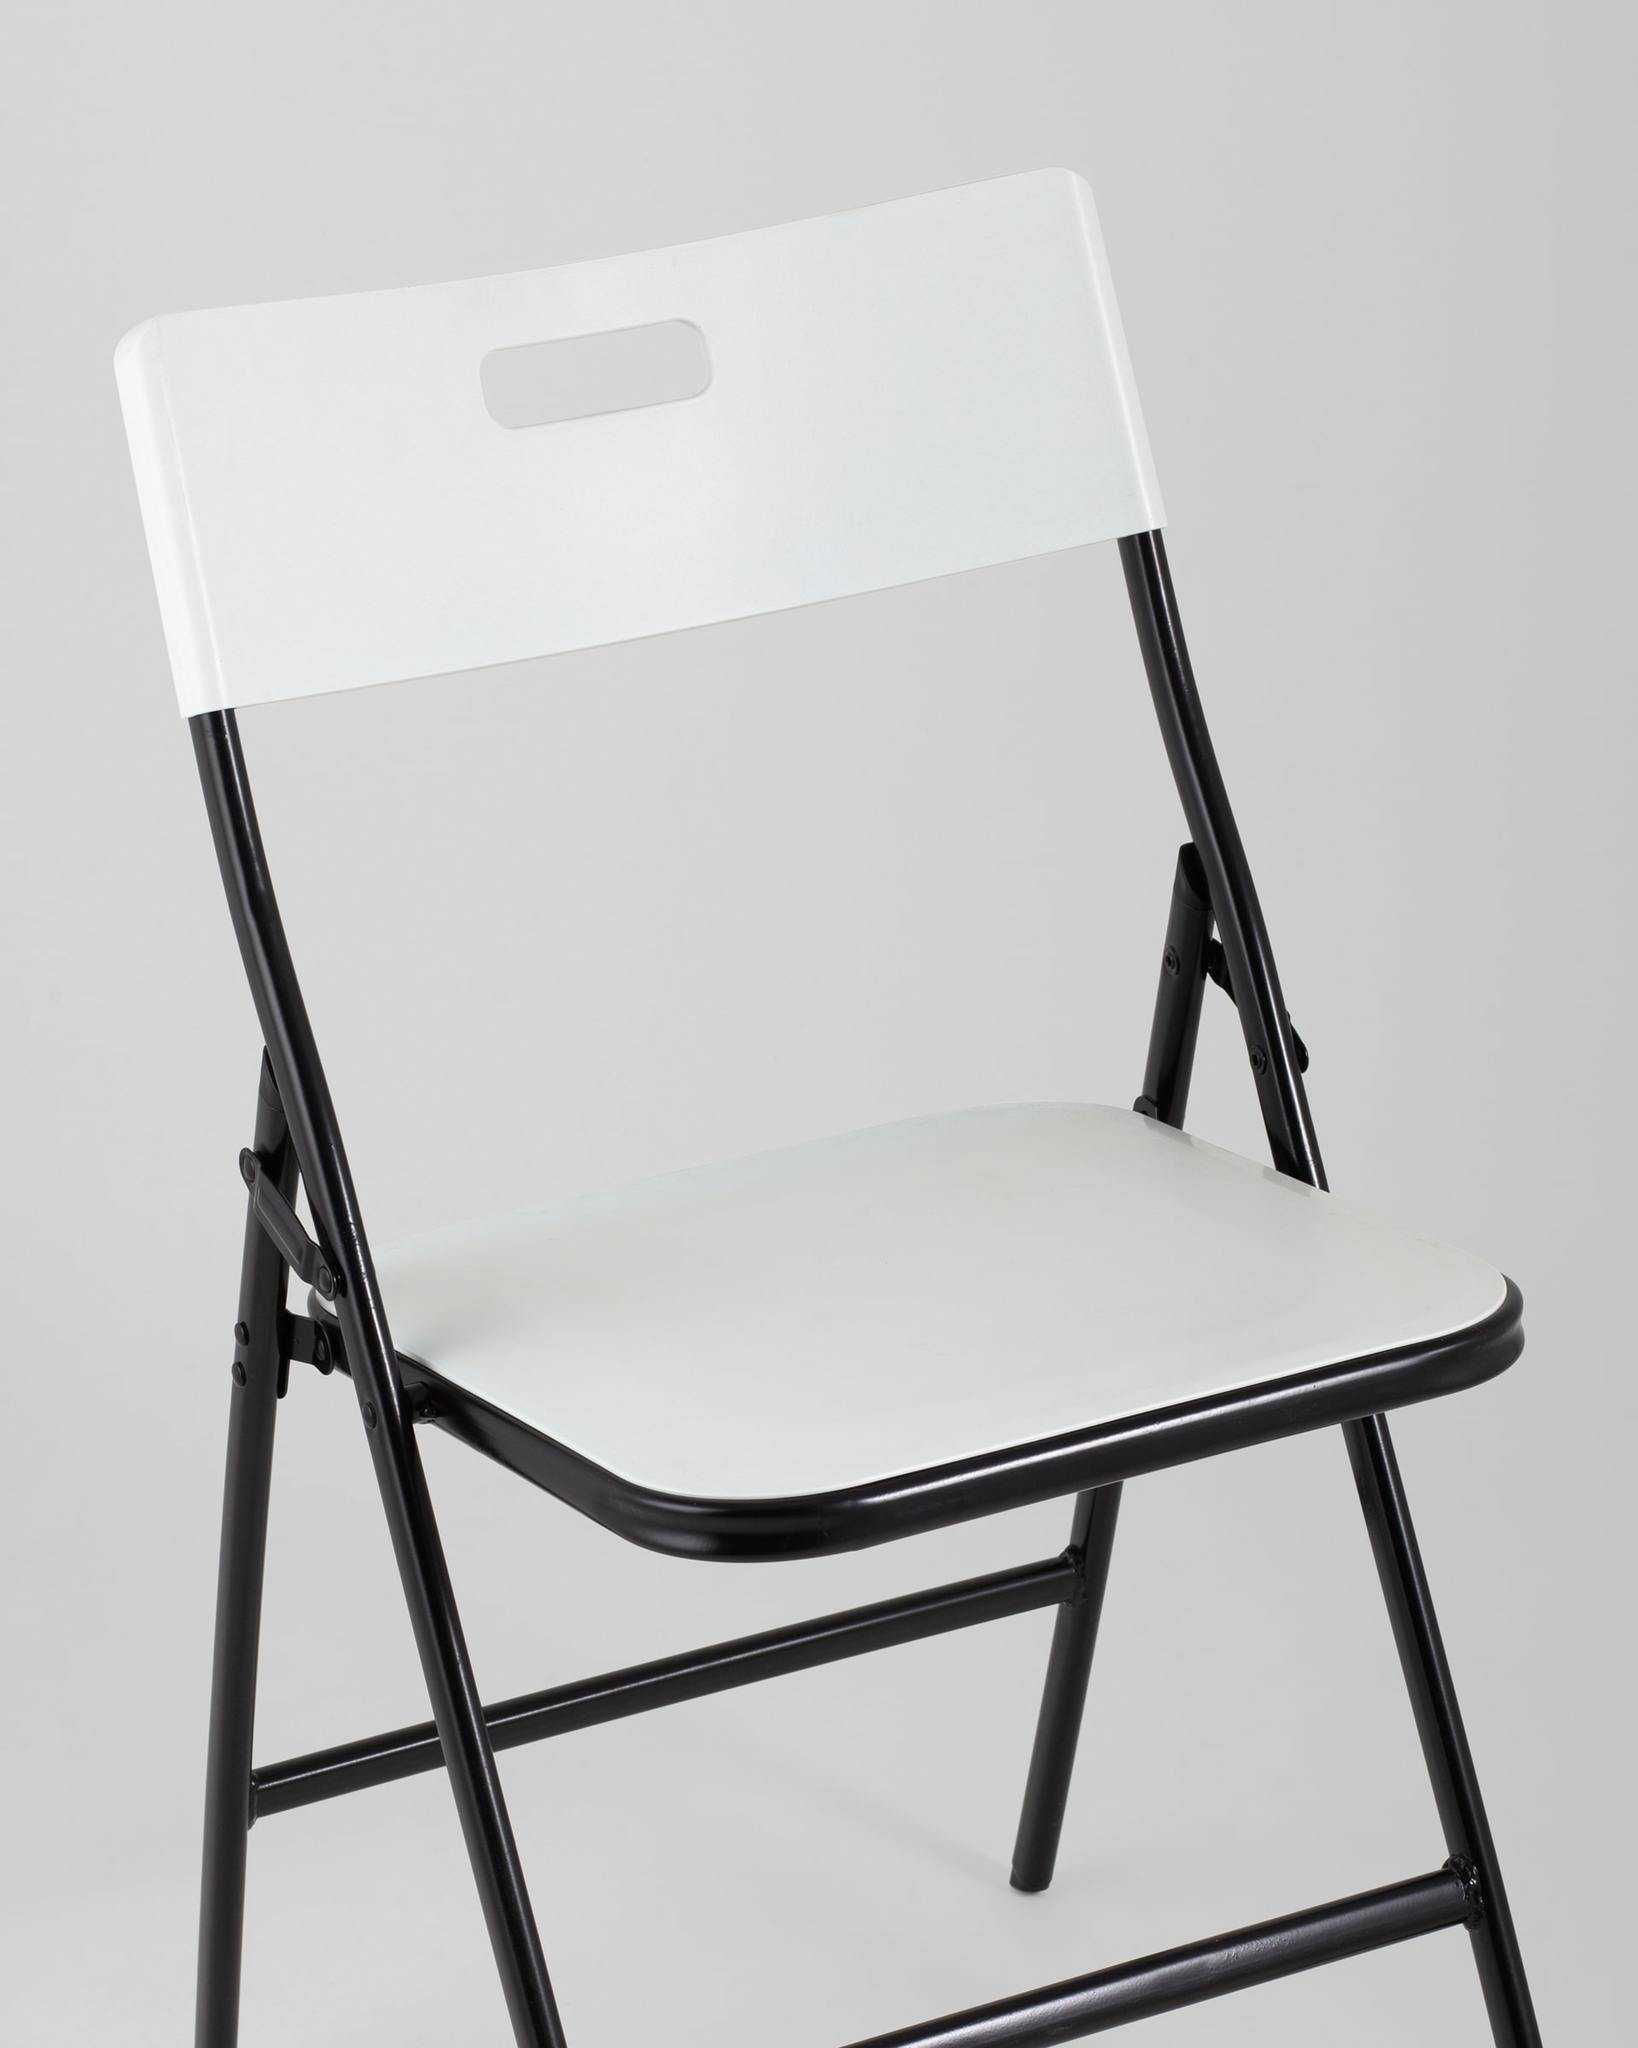 Складные барные стулья: преимущества и особенности